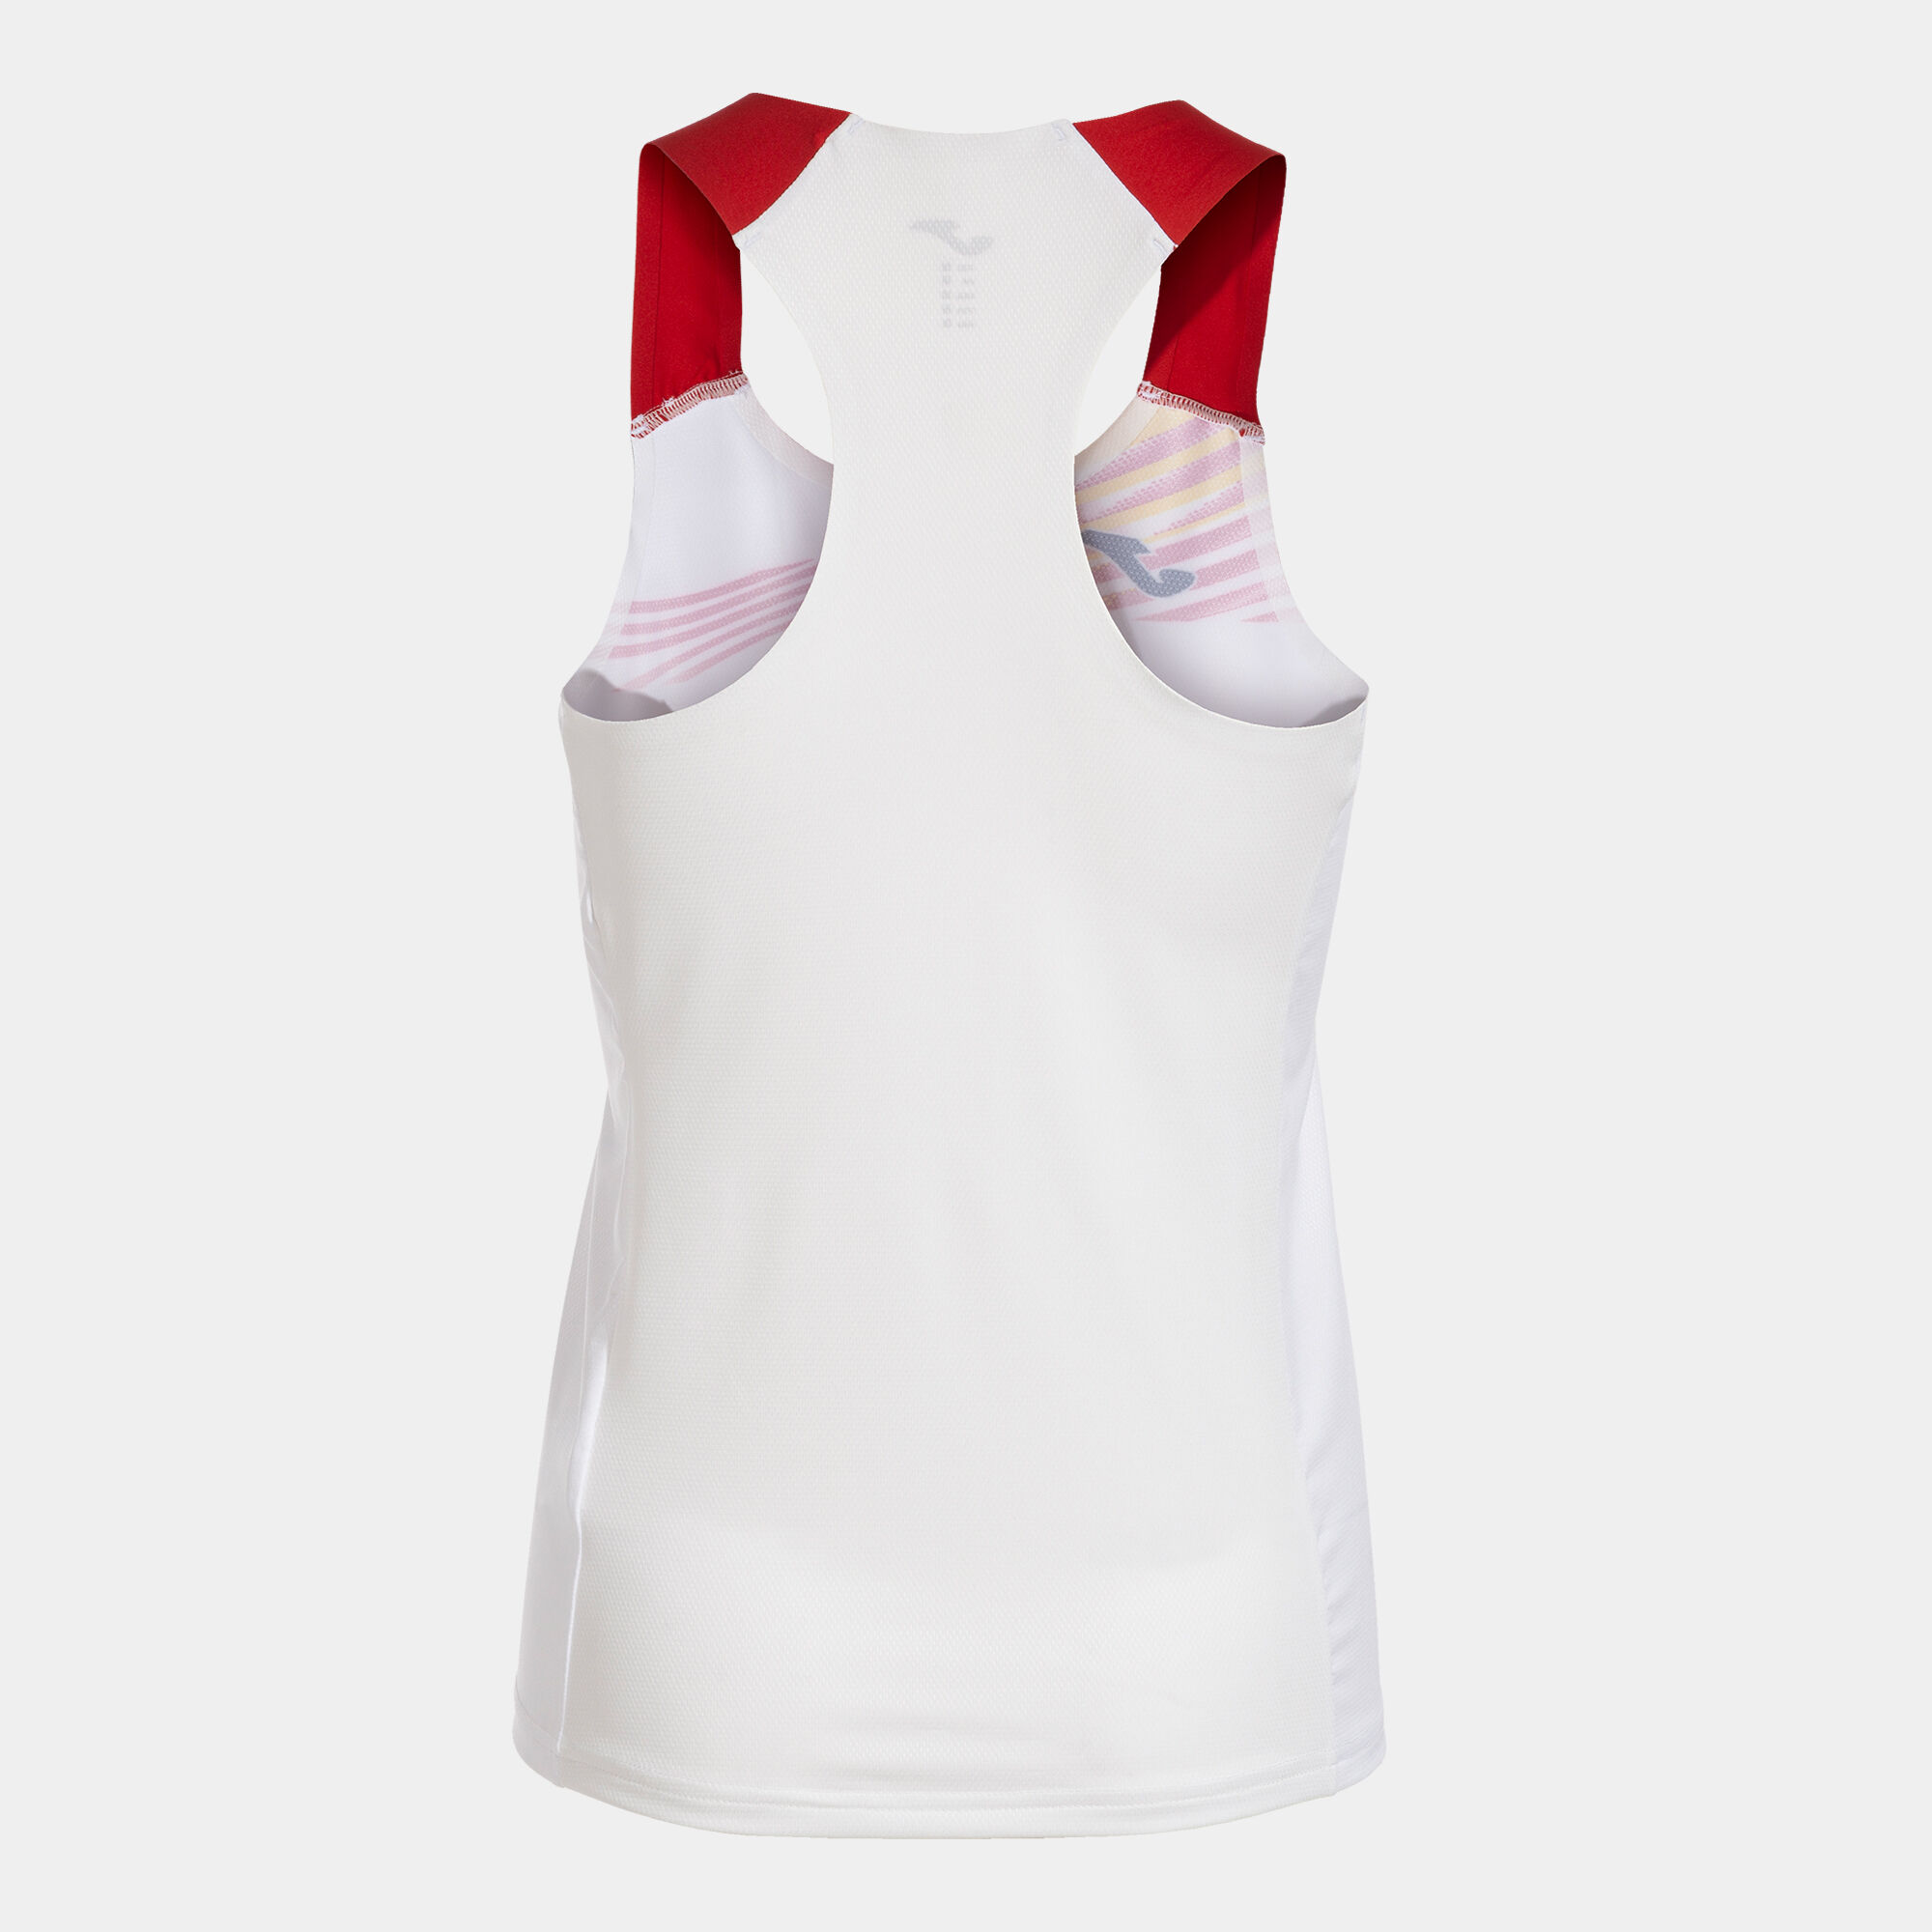 Schulterriemen-shirt frau Elite X weiß rot